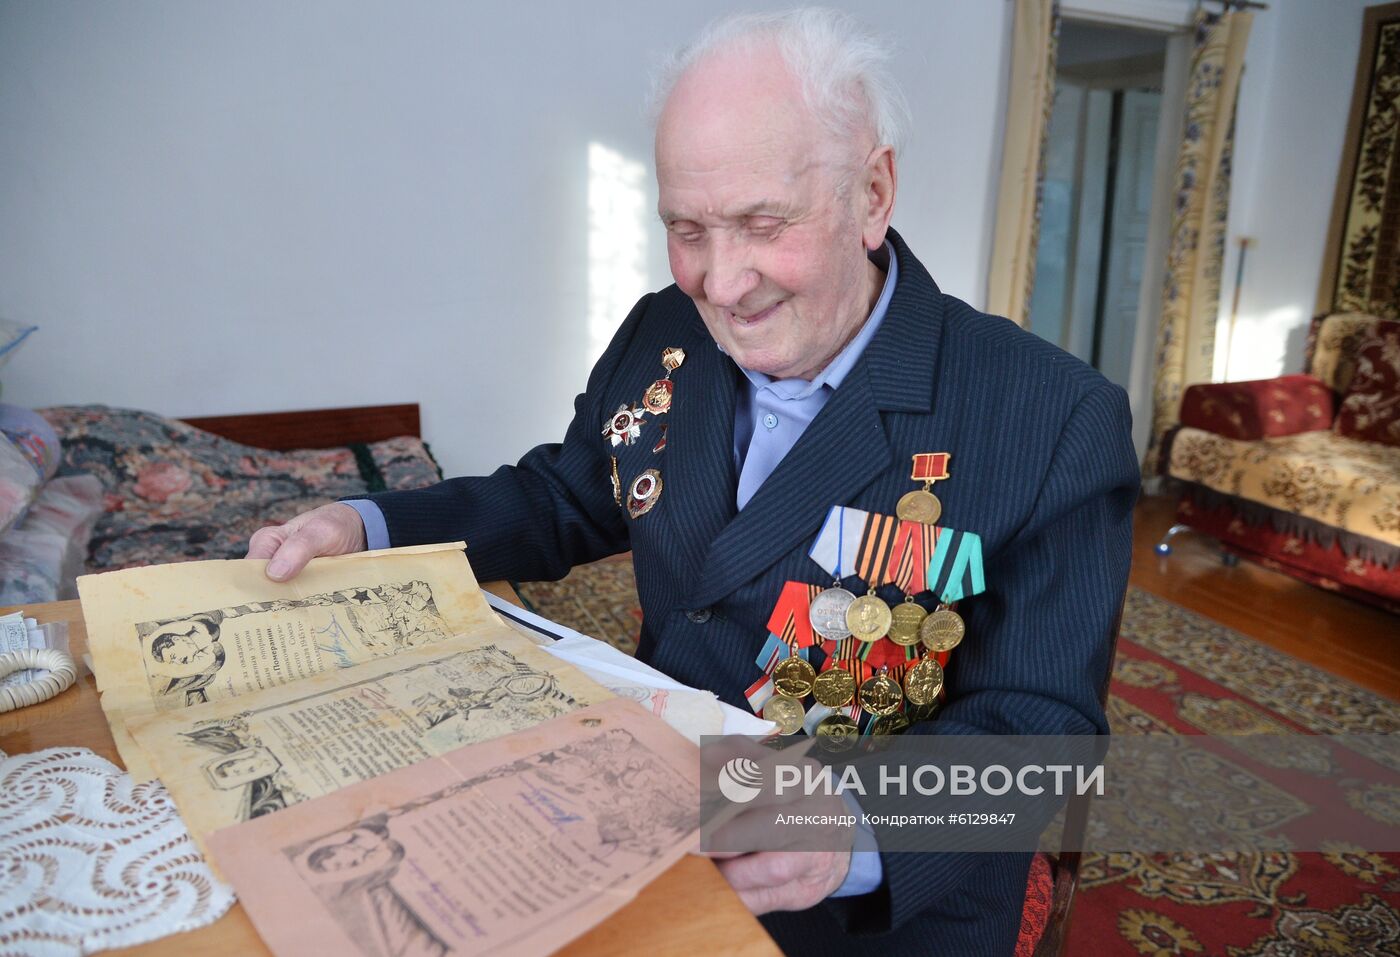 Ветеран Великой Отечественной войны Борис Никитич Бабкин